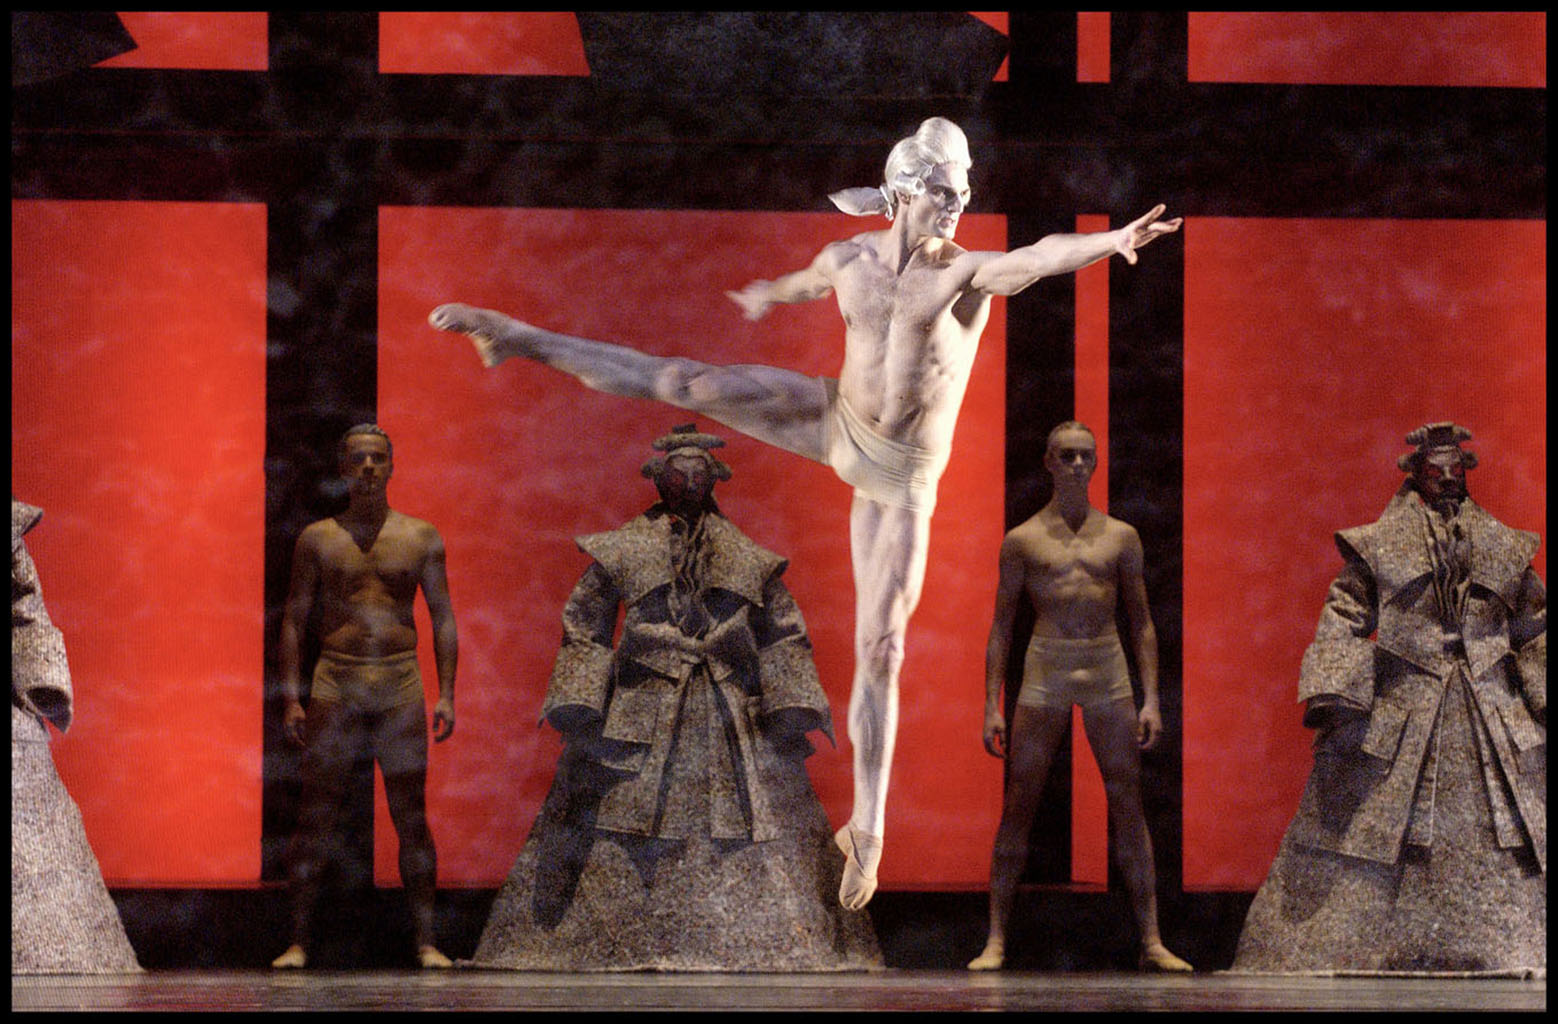 Don Giovanni, Het Nationale Ballet, Krzystof Pastor, 2005 dancer N. Rapaic